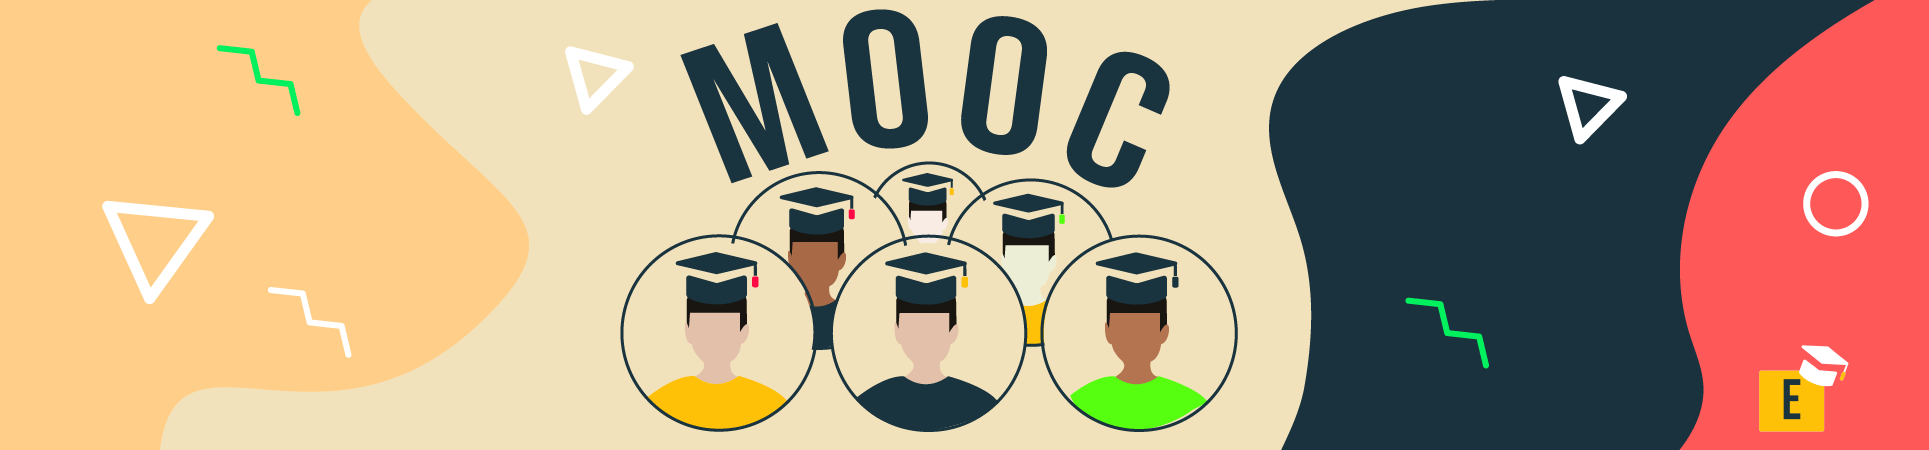 MOOC kostenlose online Kurse